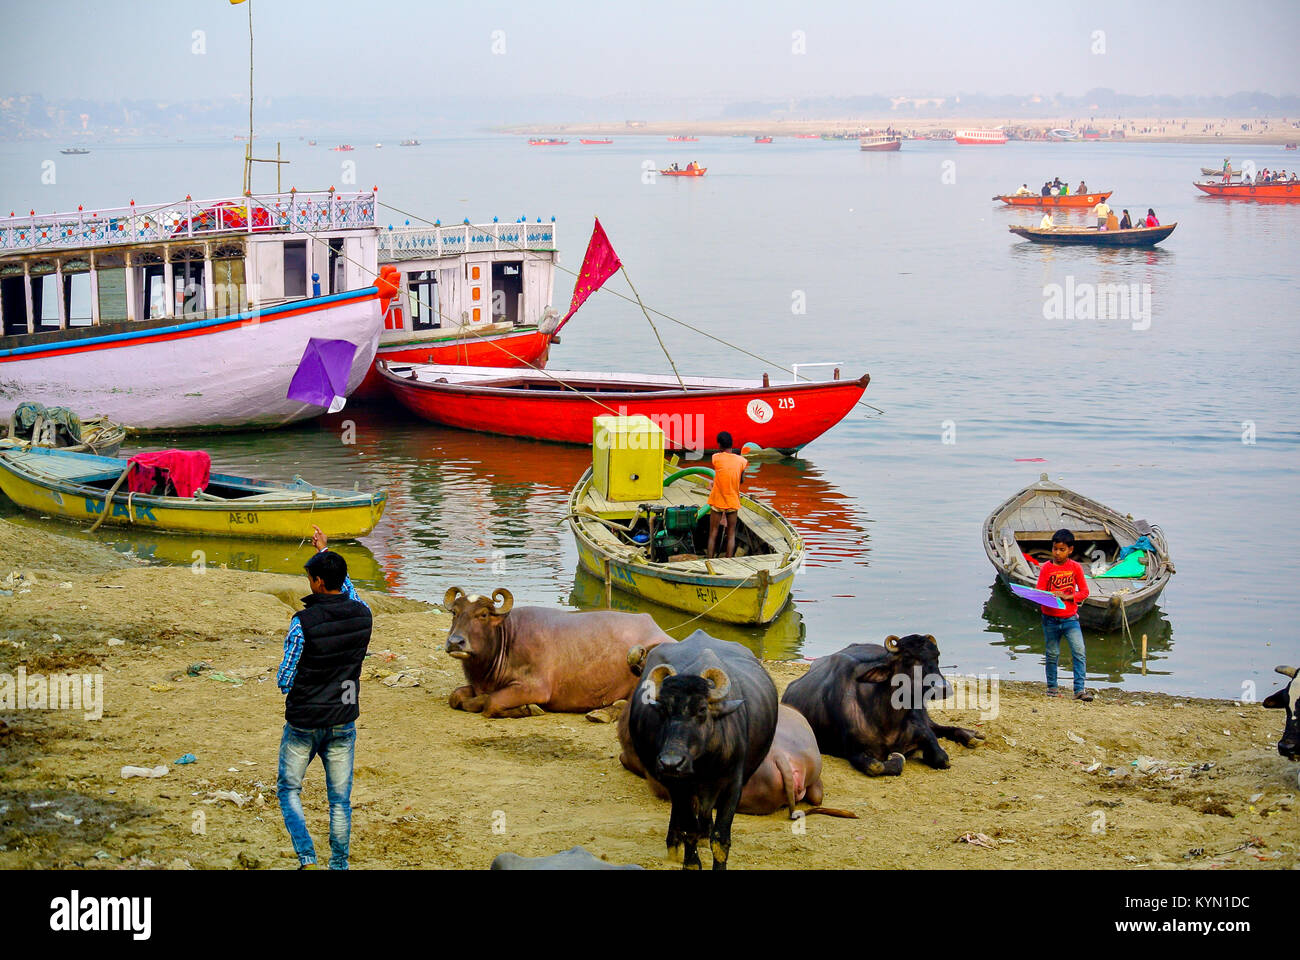 Varanasi, Uttar Pradesh, Inde, un indien avec des vaches noires au bord du fleuve ganges Banque D'Images